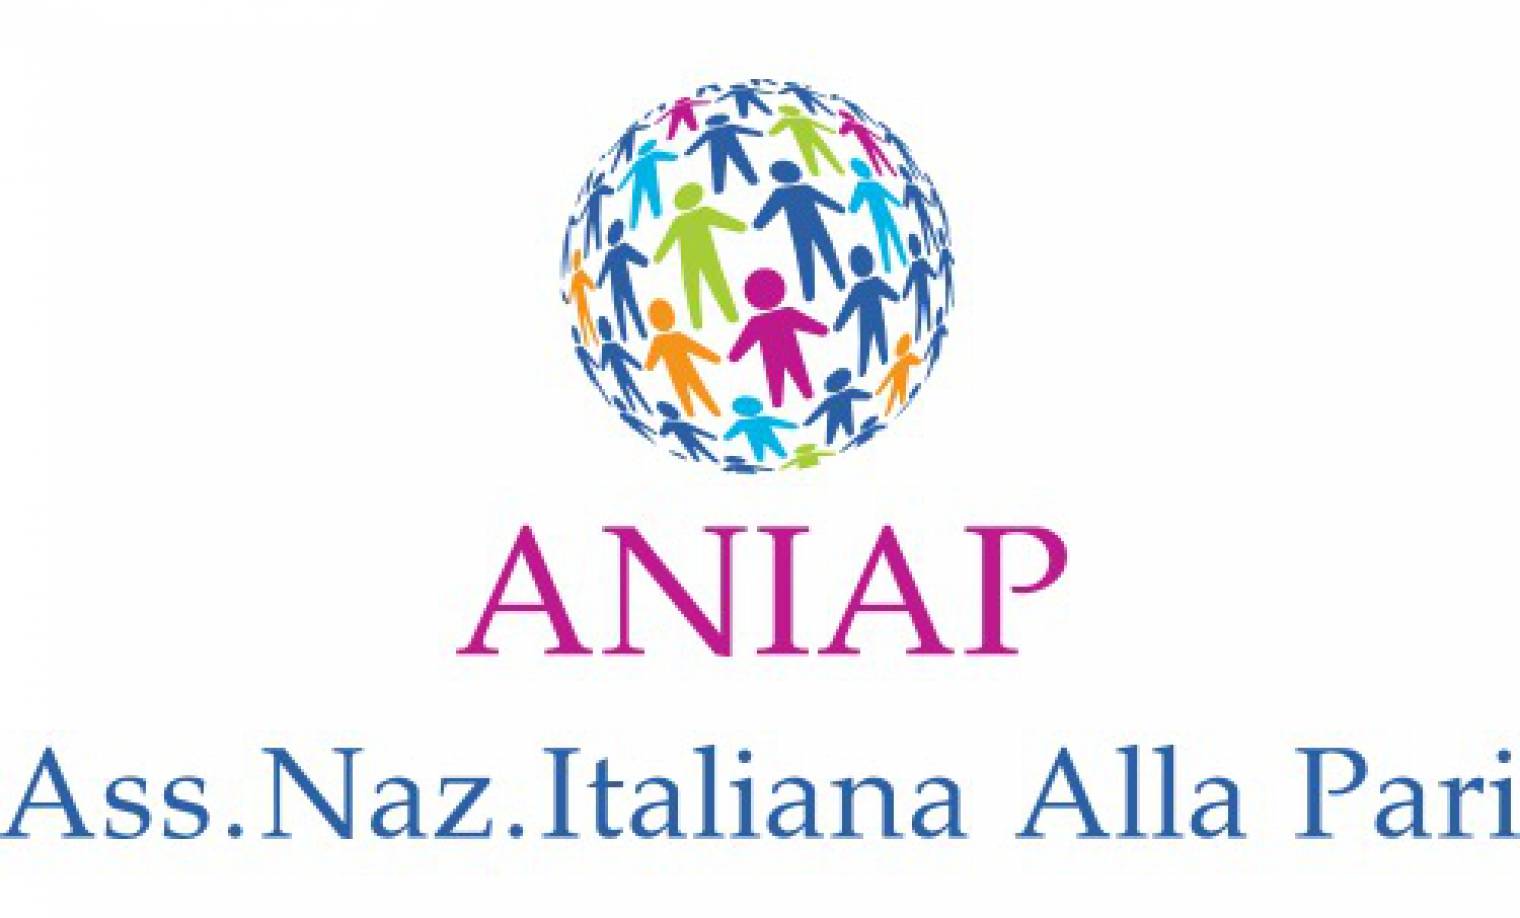 IAPA new member: Associazione Nazionale Italiana Alla Pari (ANIAP)